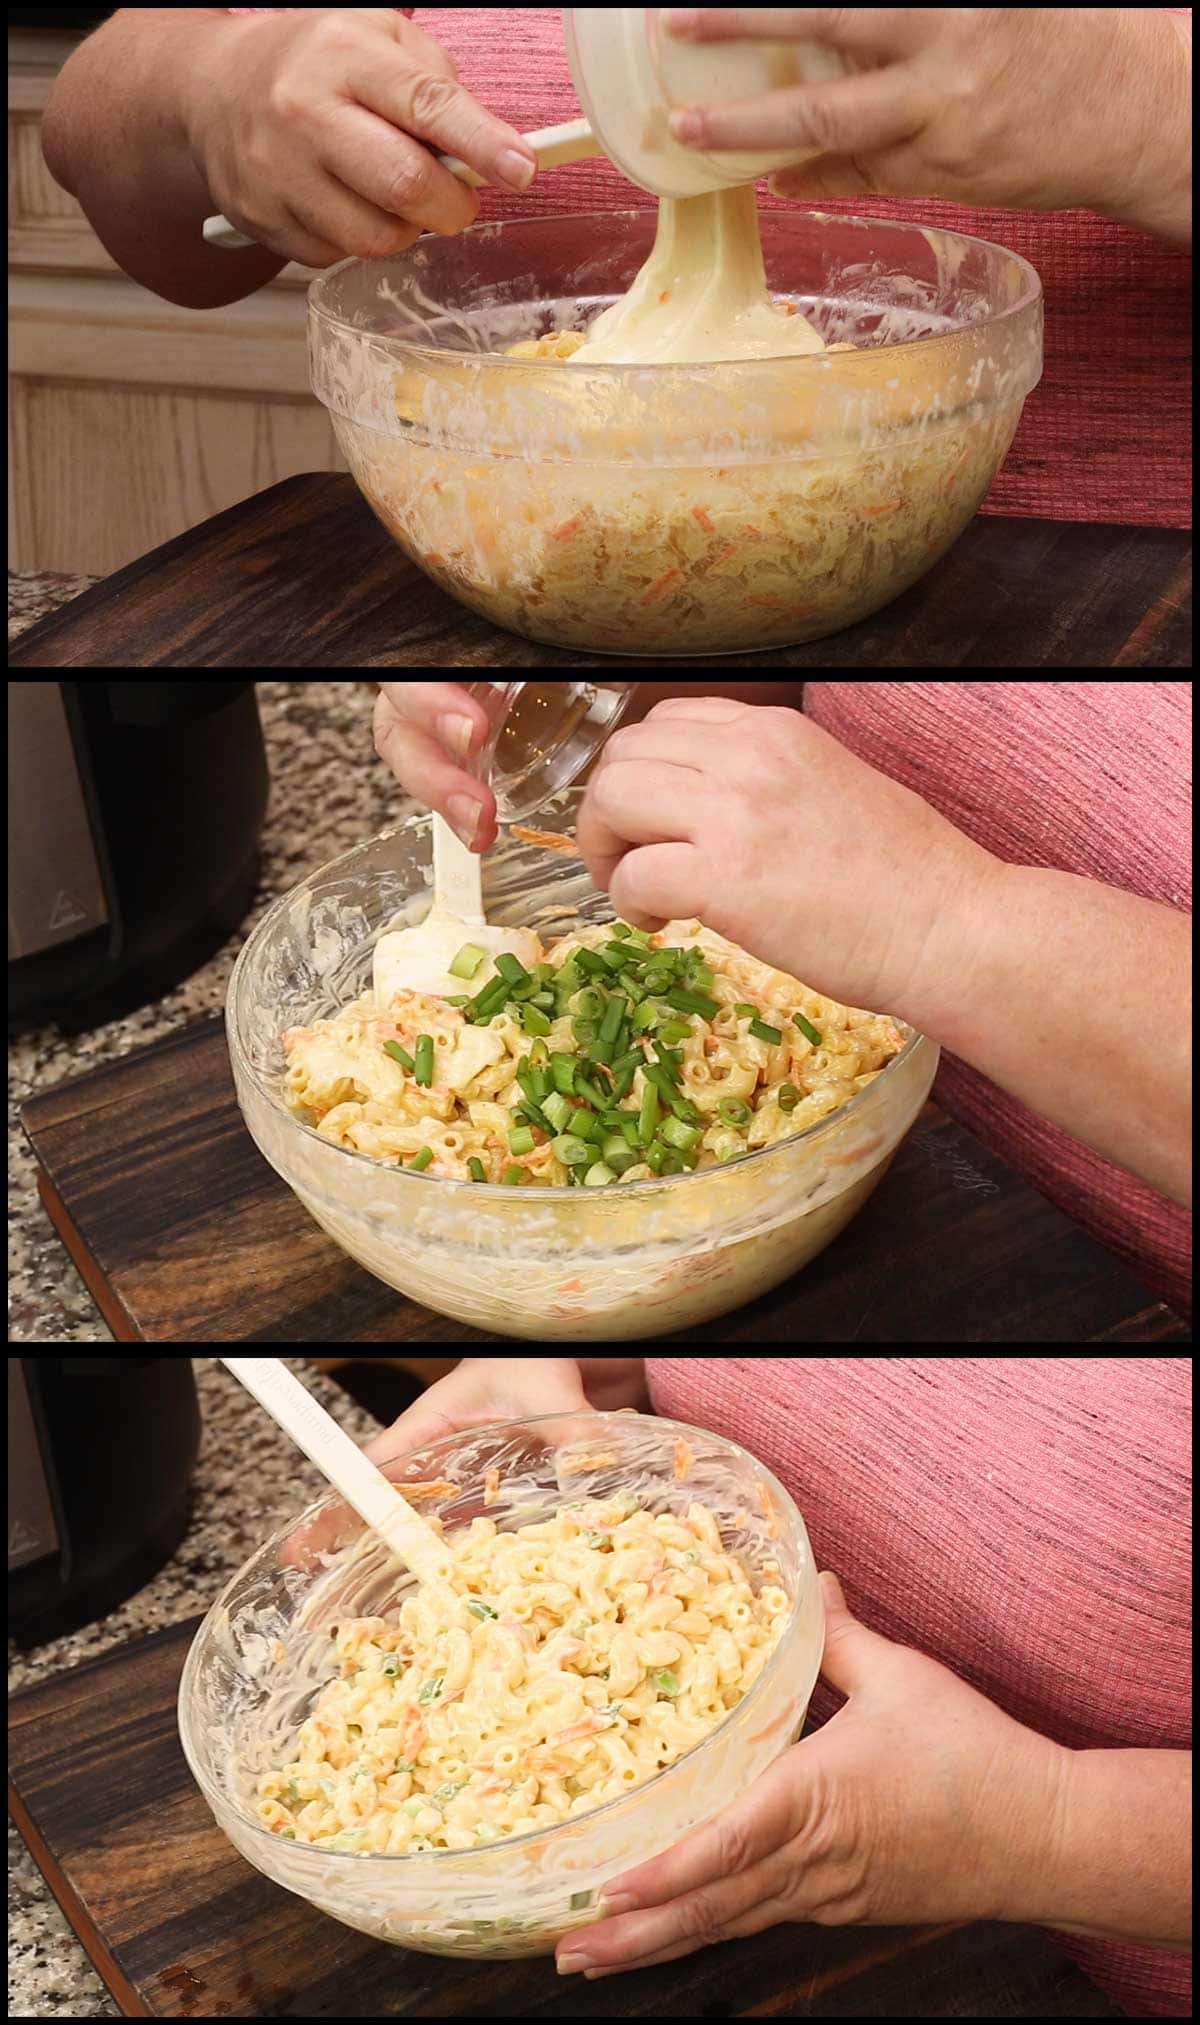 adding remaining ingredients to macaroni salad